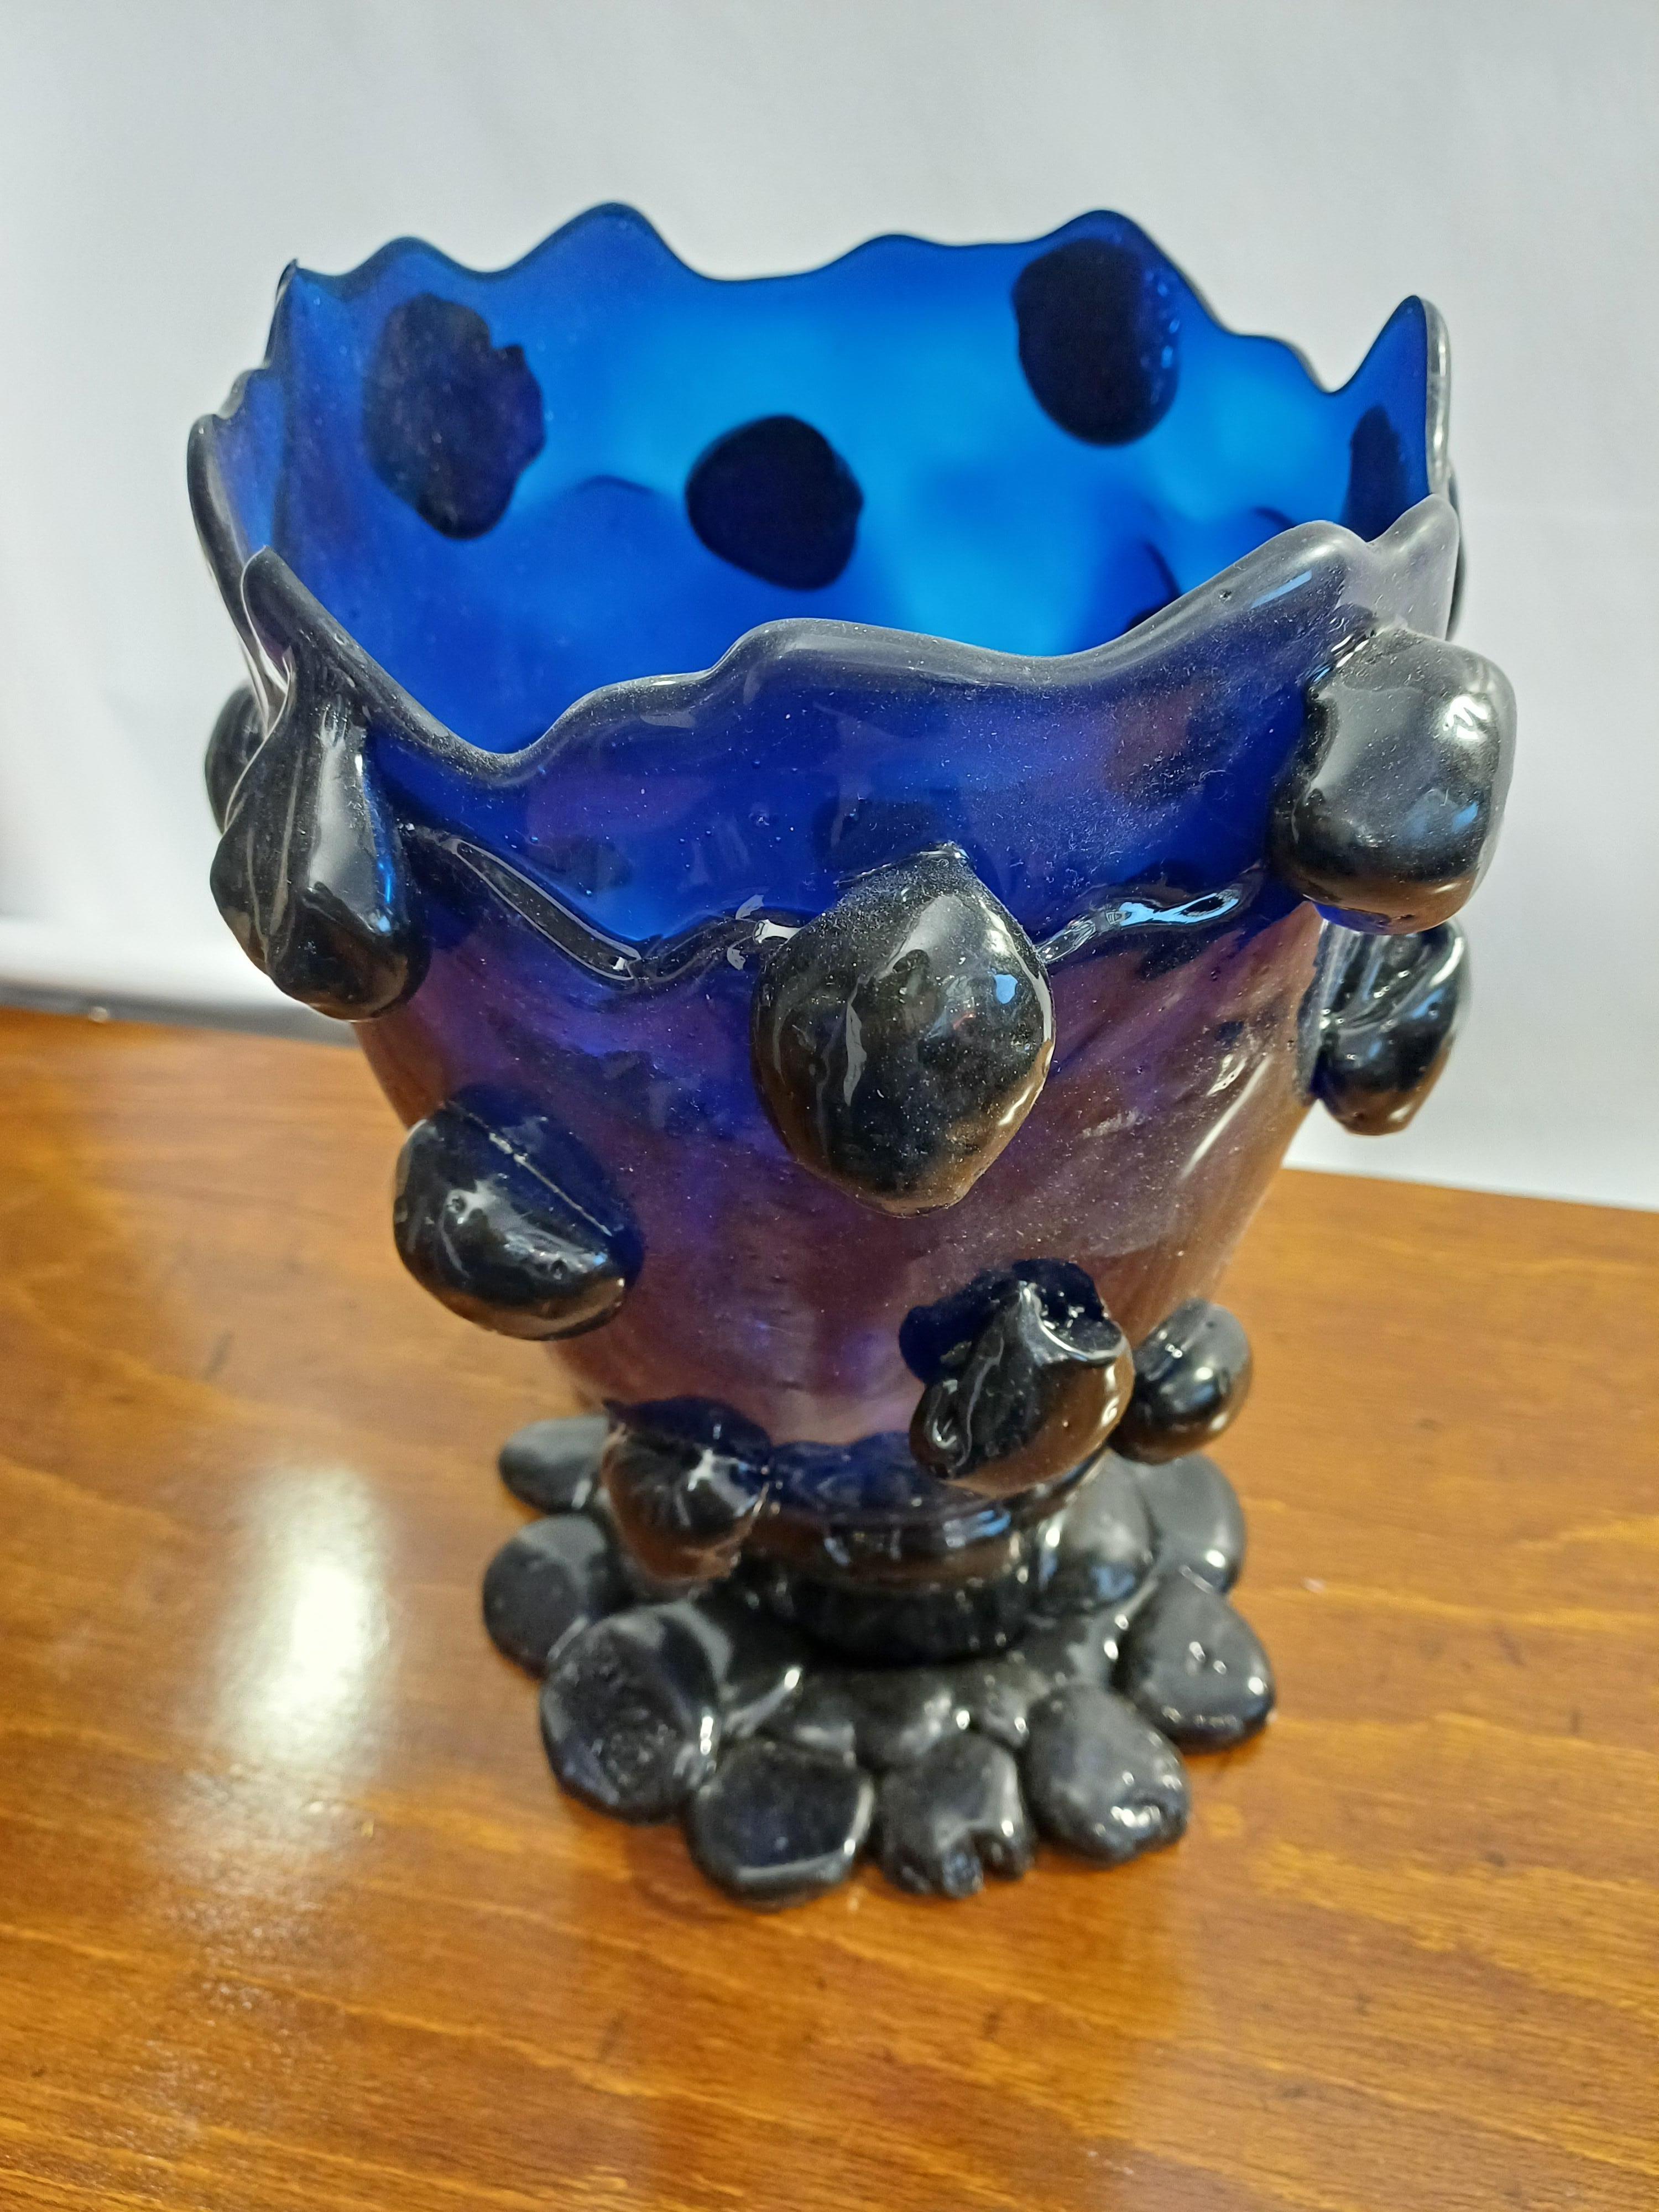 Blue resin vase designed by Gaetano Pesce and produced by Fish Design Model Nugget
Marchiato alla base, con certificato di autenticità.
Measurements: diameter 18 cm, height 27 cm